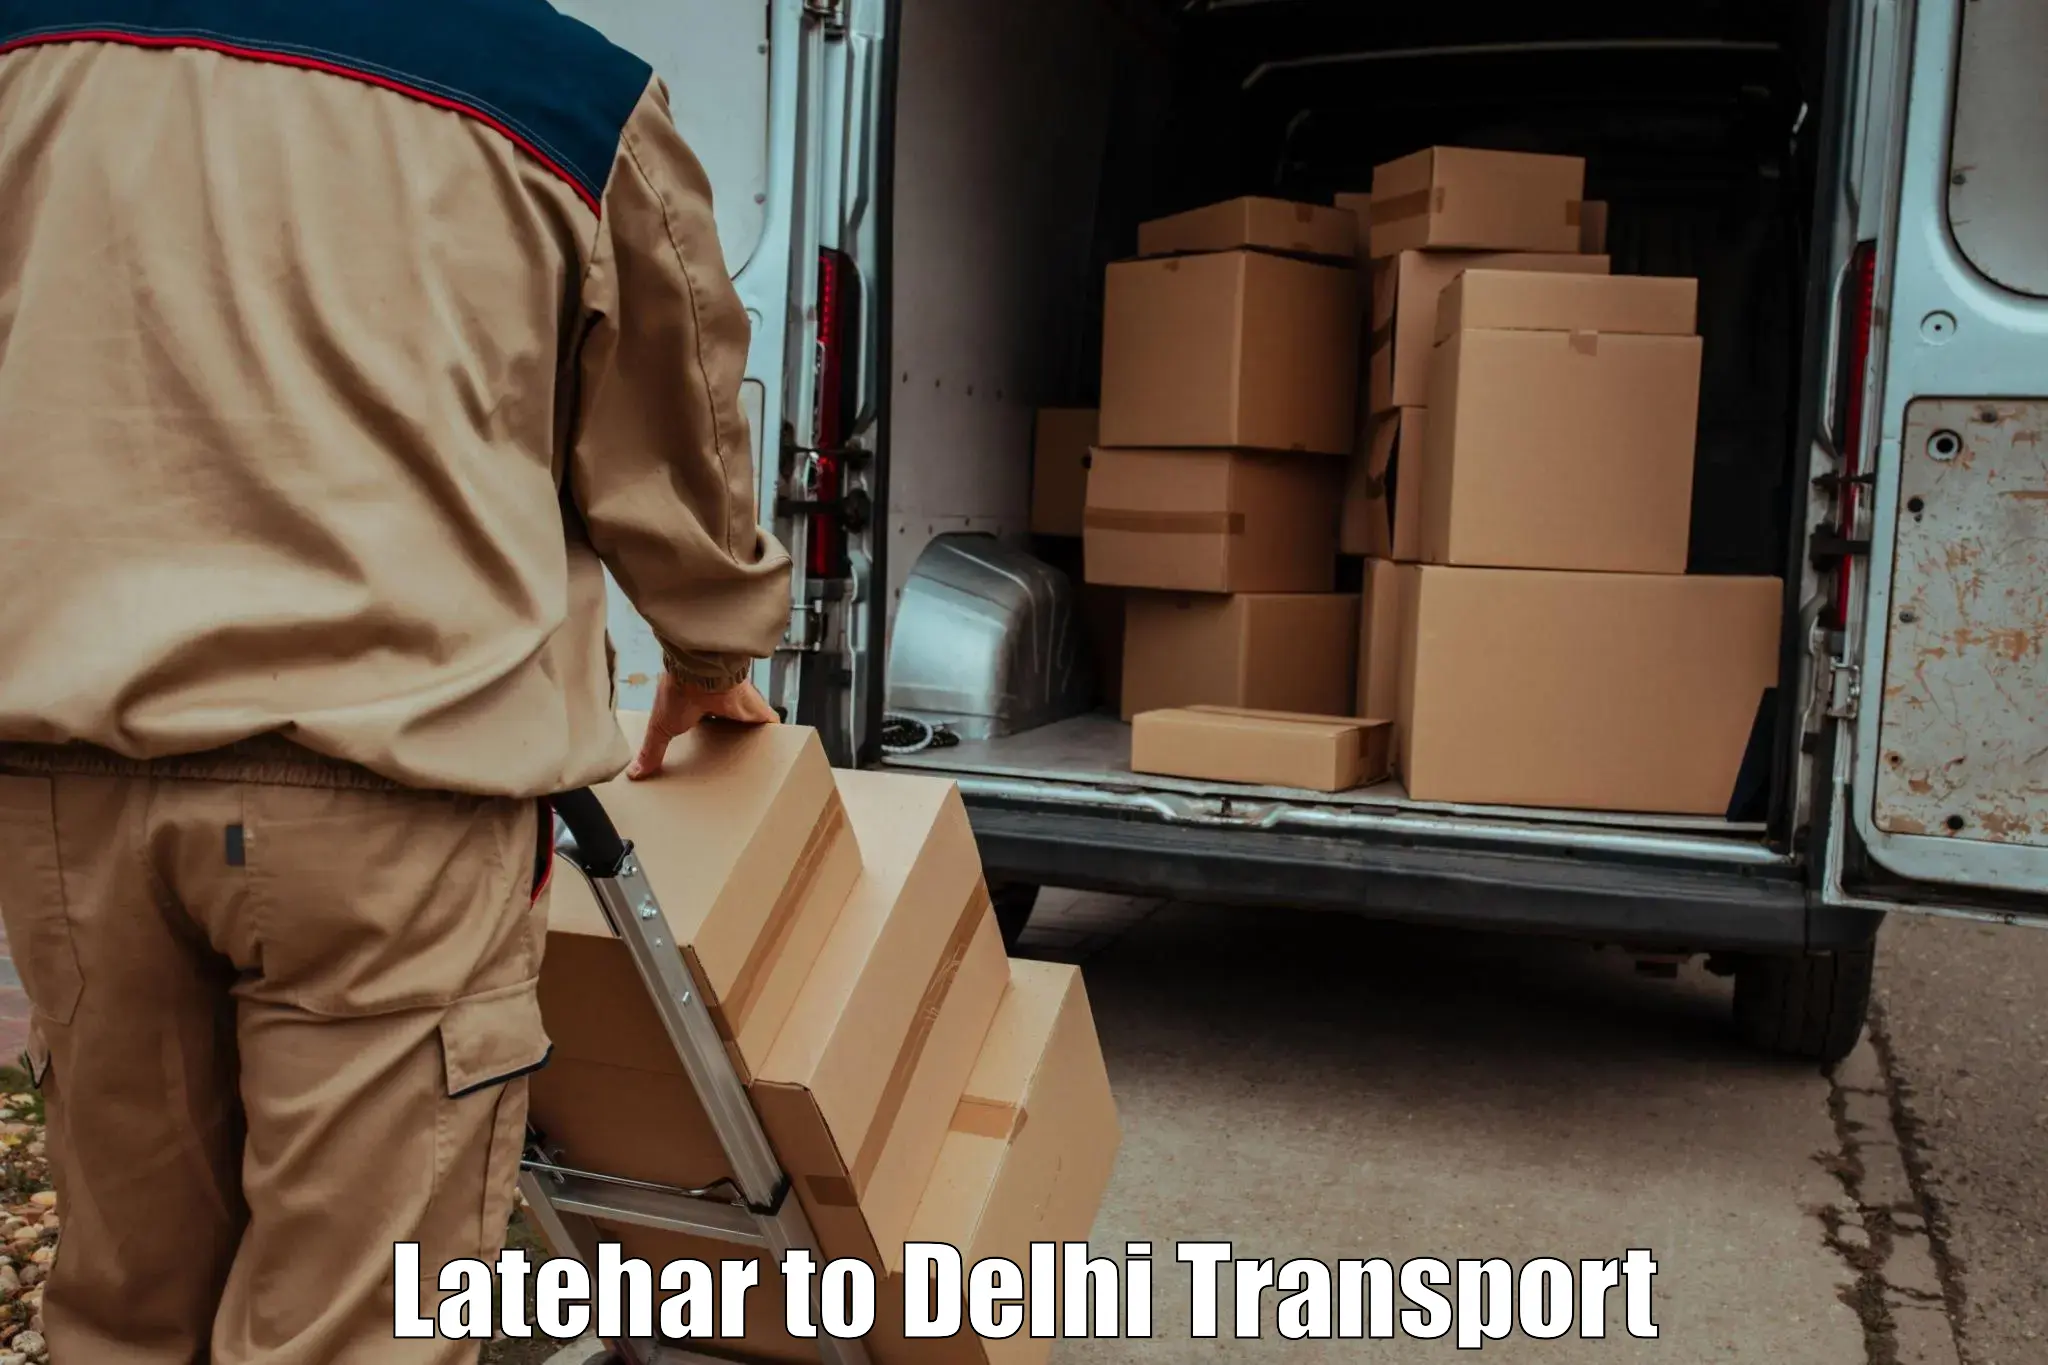 Delivery service Latehar to Delhi